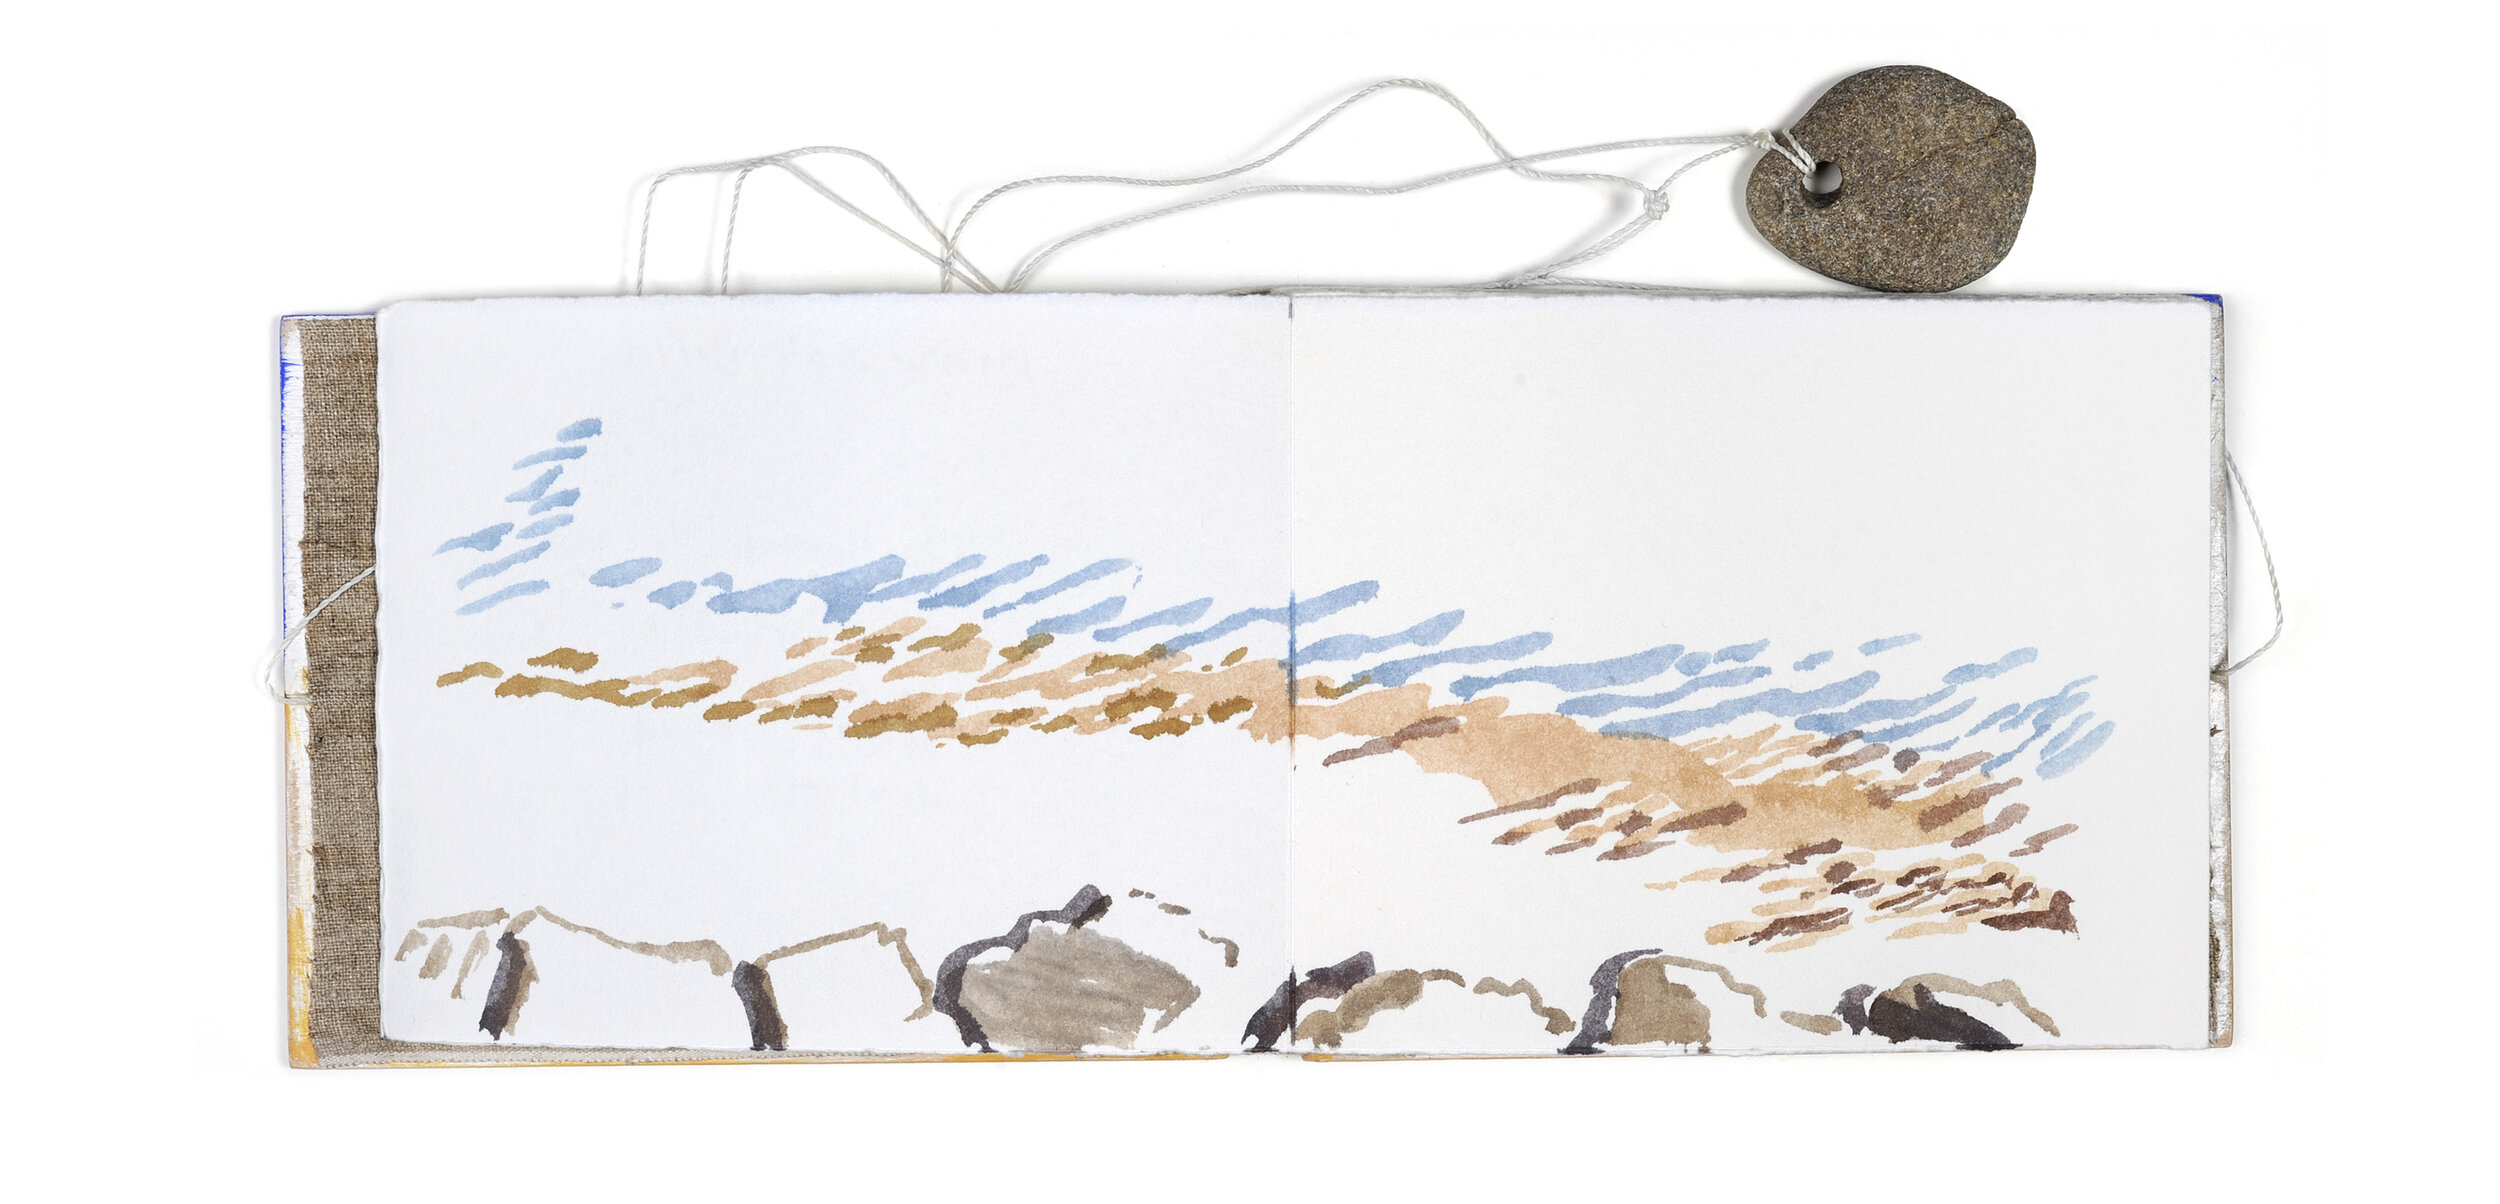  La descente à la plage, 25 avril 1997 Température 7°, vent d’Ouest force 5, Froid Carnet d’aquarelles sur papier Johannot pur fil 125 g, 12,5 × 15,5 cm  